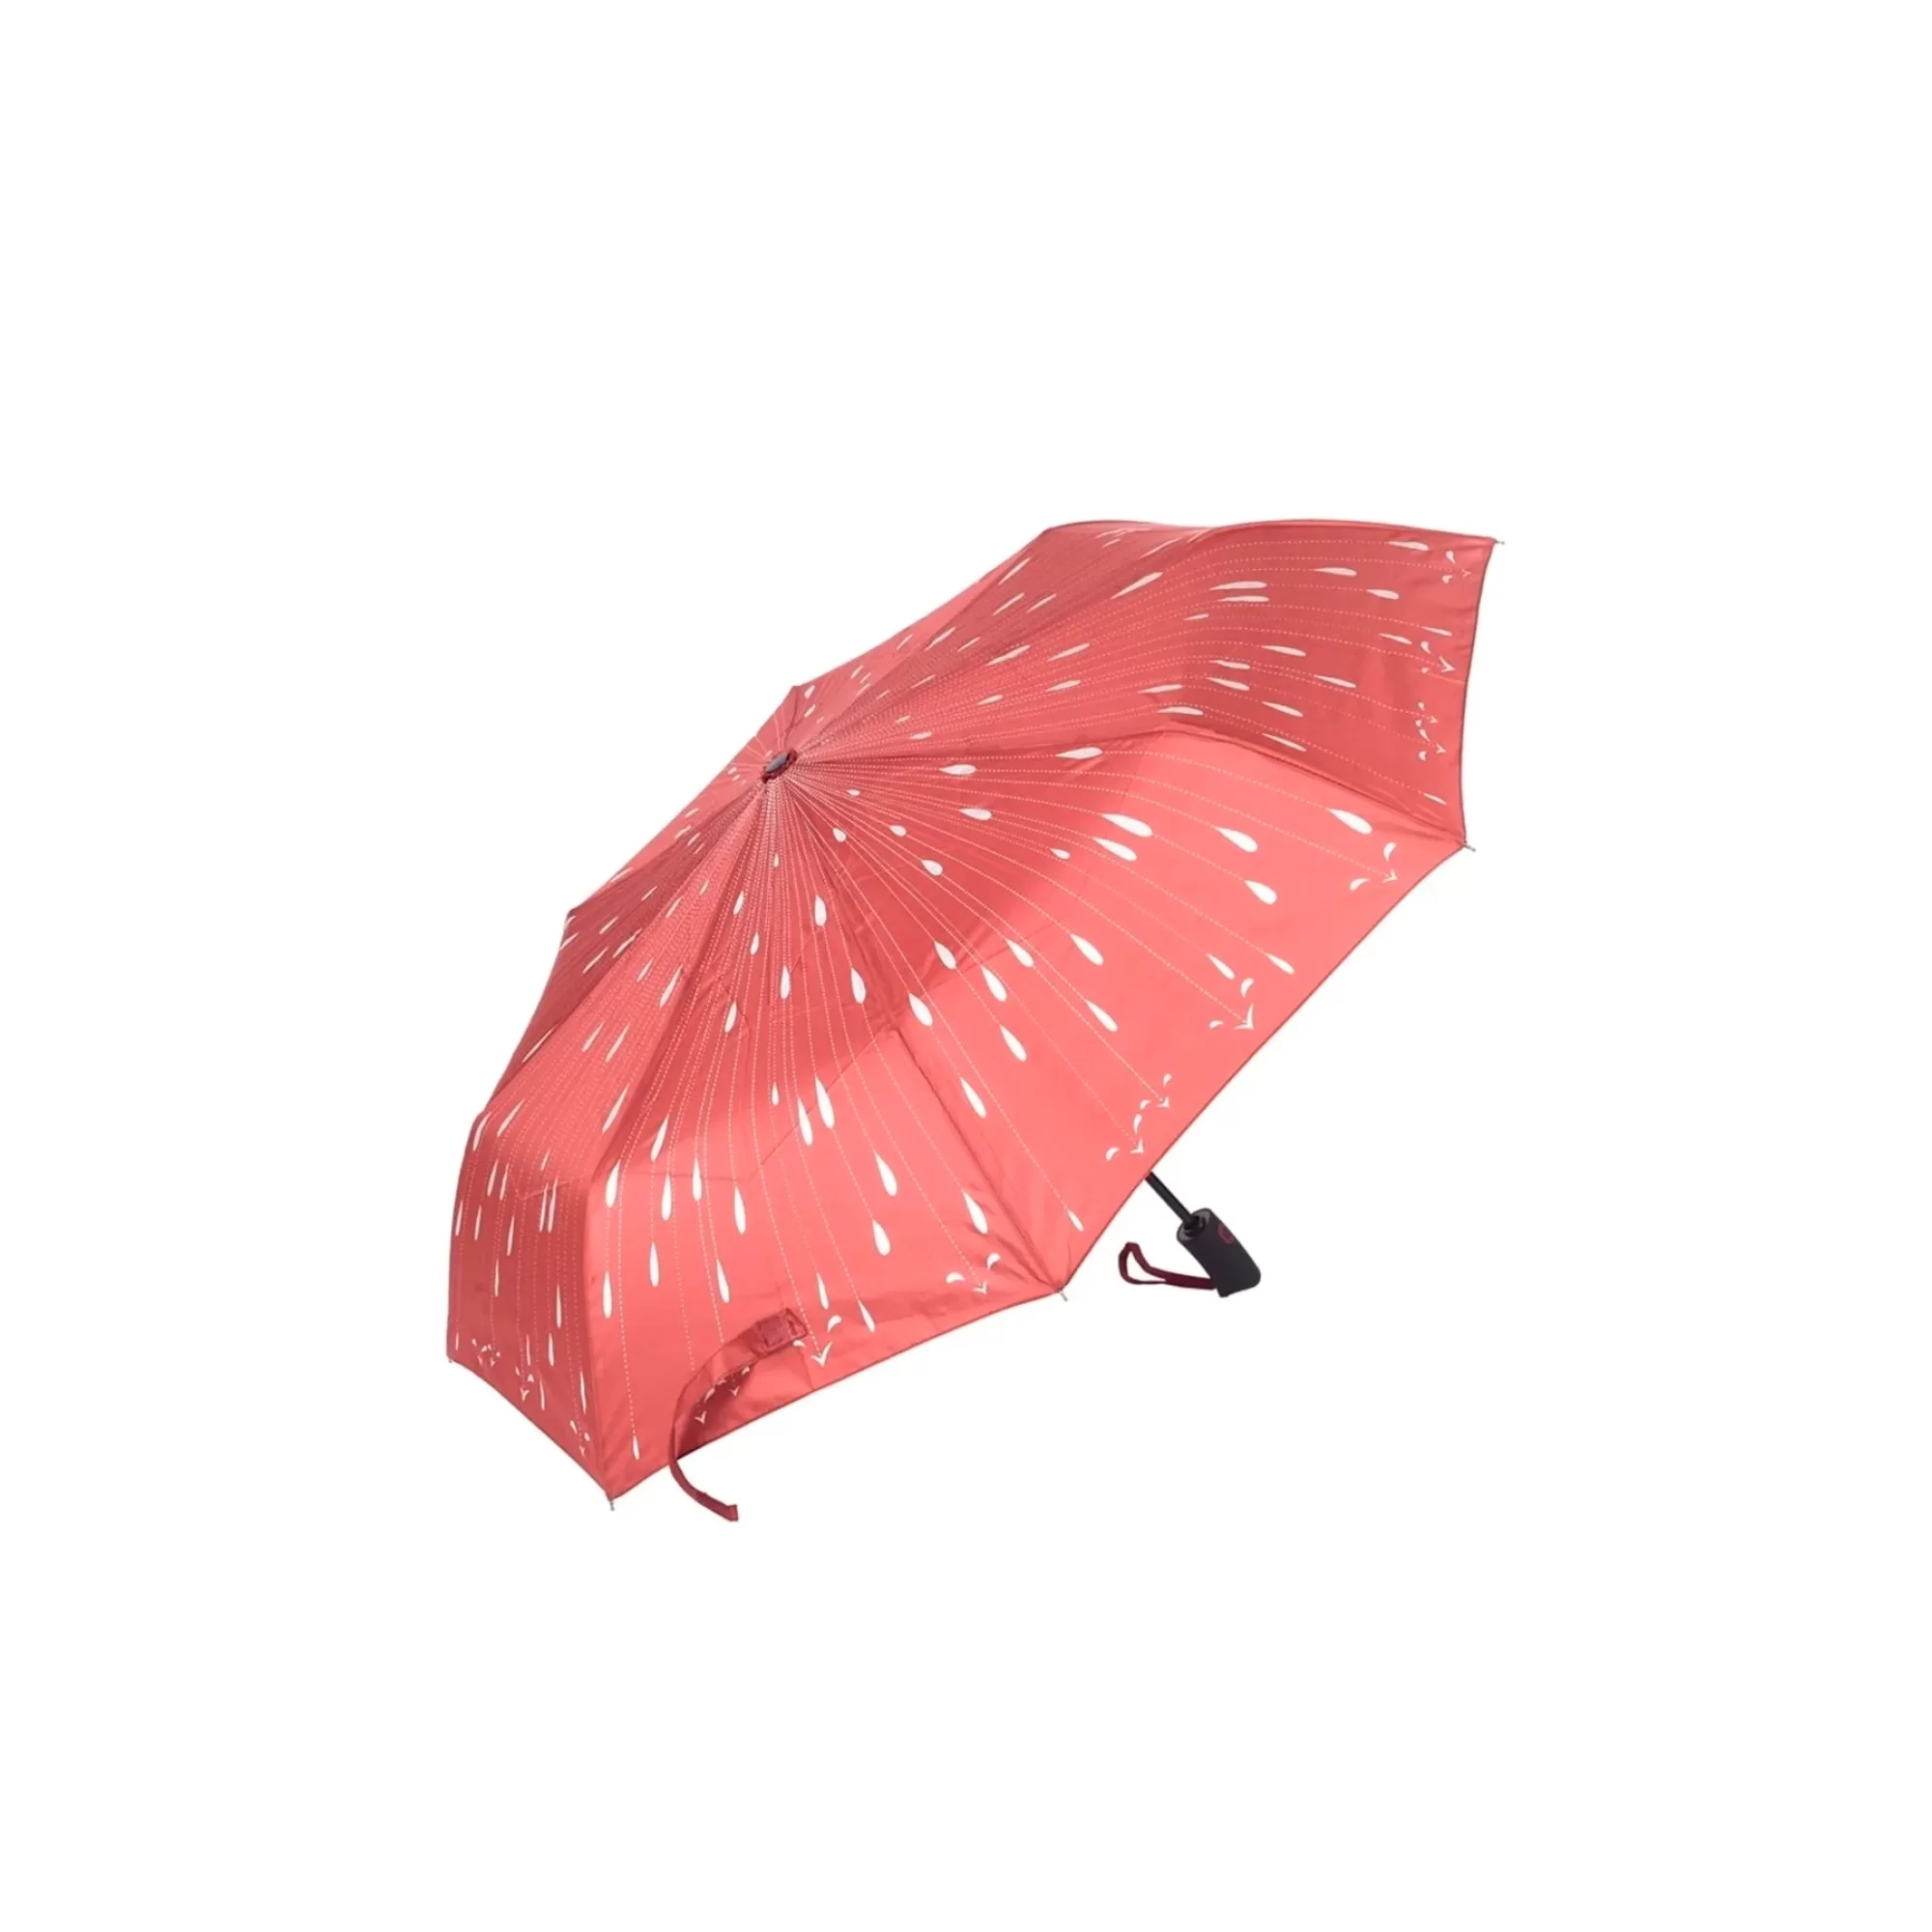 Marpaş Marlux MAR 711 Şemsiye Otomatik Desenli 8 Telli